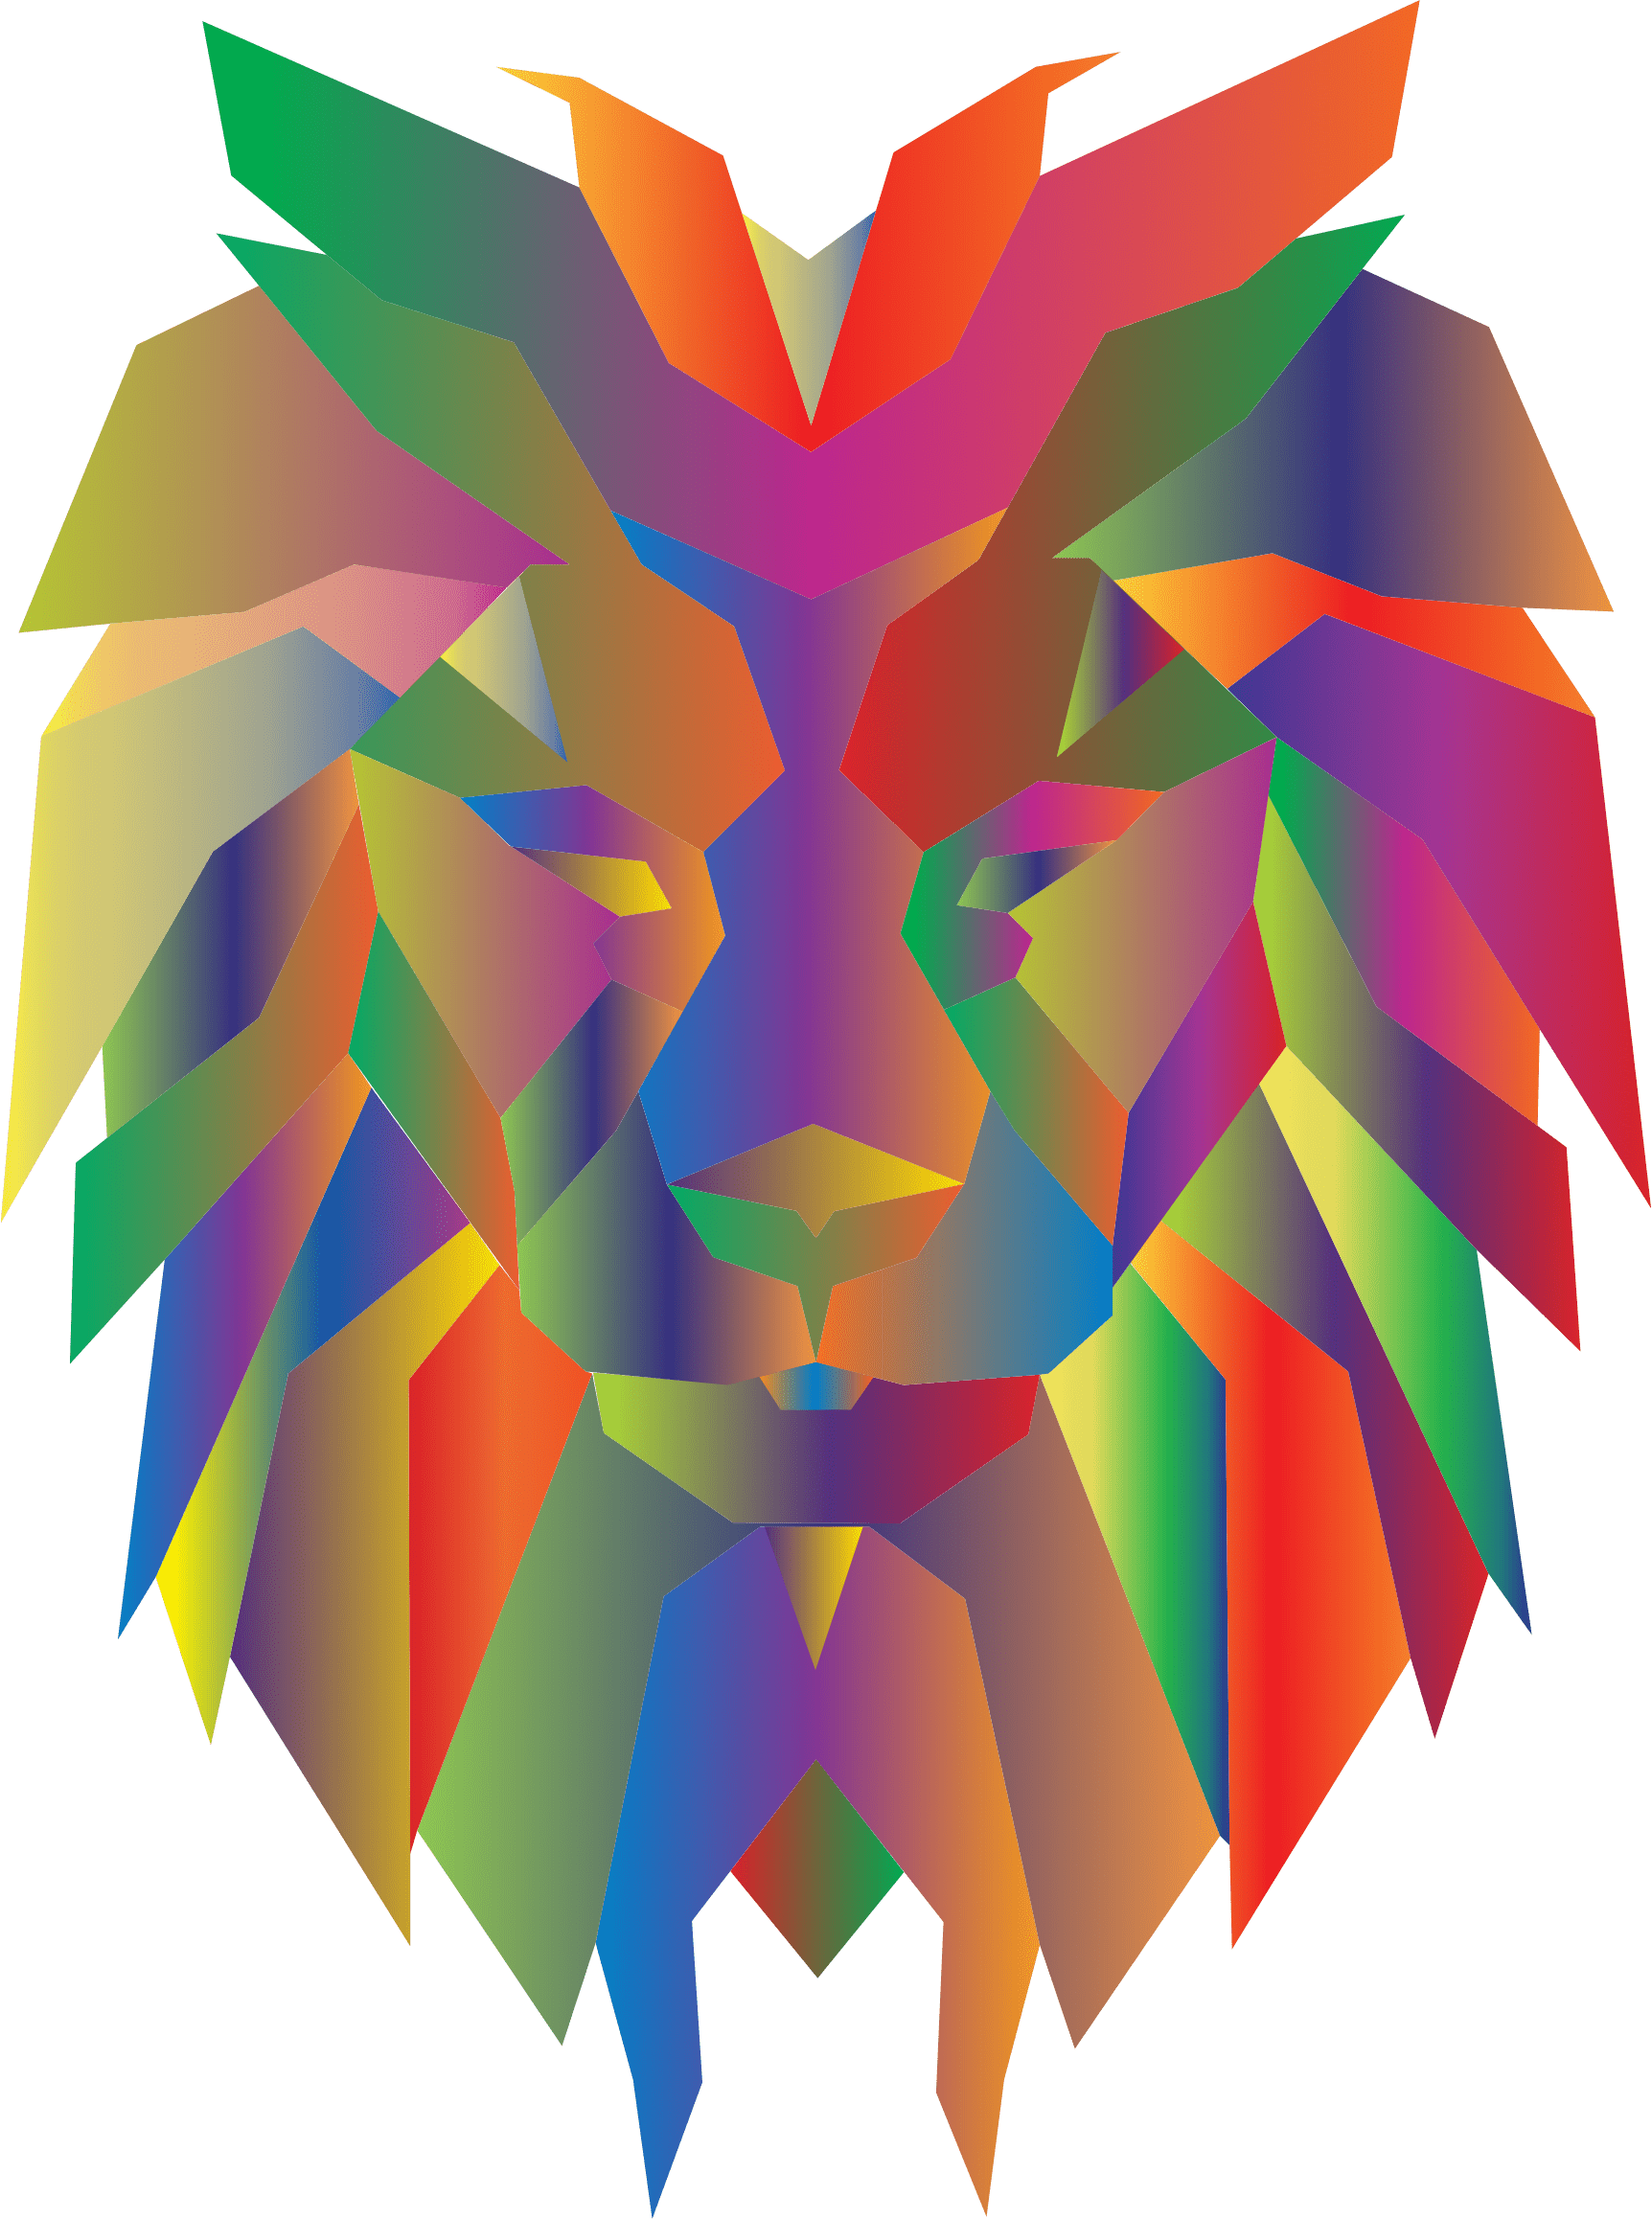 Lion Faces Graphic Design (1724x2316)